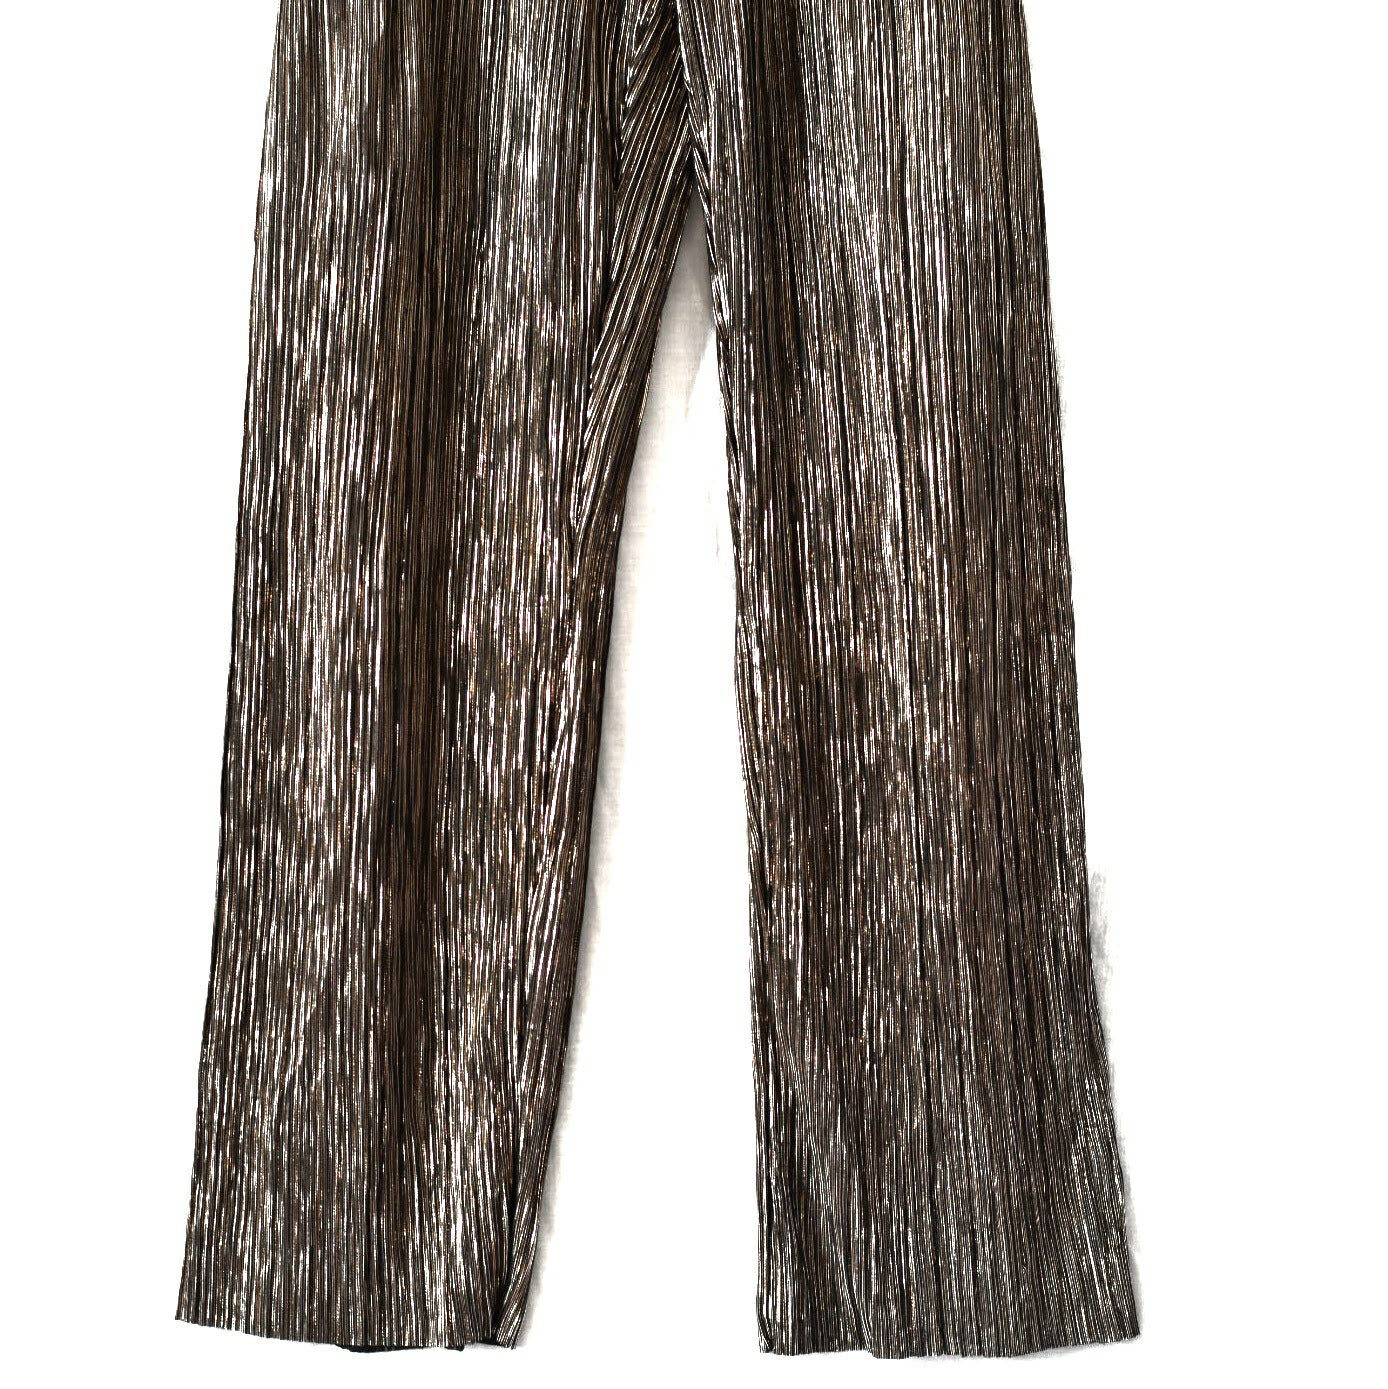 Long Tall Sally Plisse Metallic Trouser Pants Size 20